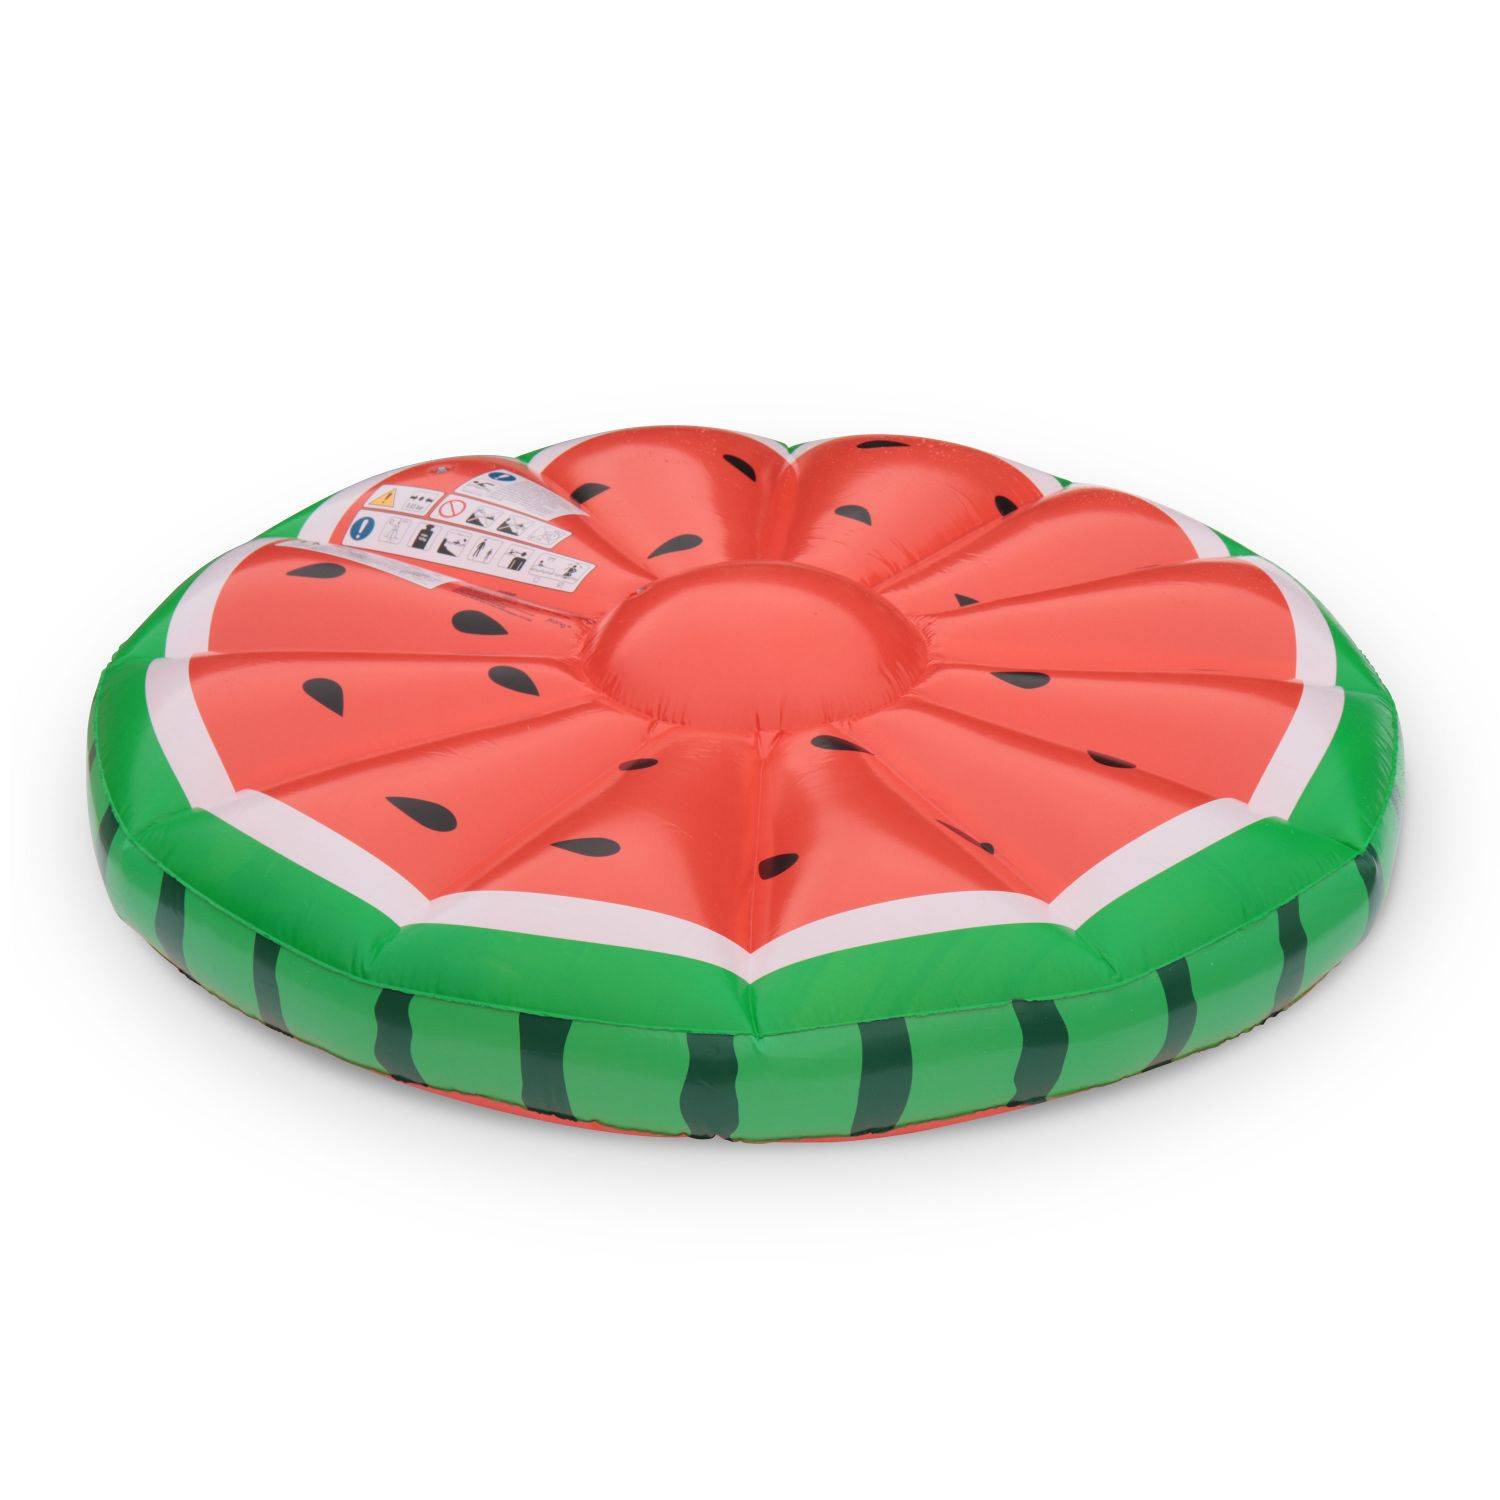 Watermelon M Drijvend luchtbed watermeloen, Ø 145 cm, WATERMELON M, rond opblaasbaar luchtbed, drijvend eiland in watermeloen vorm